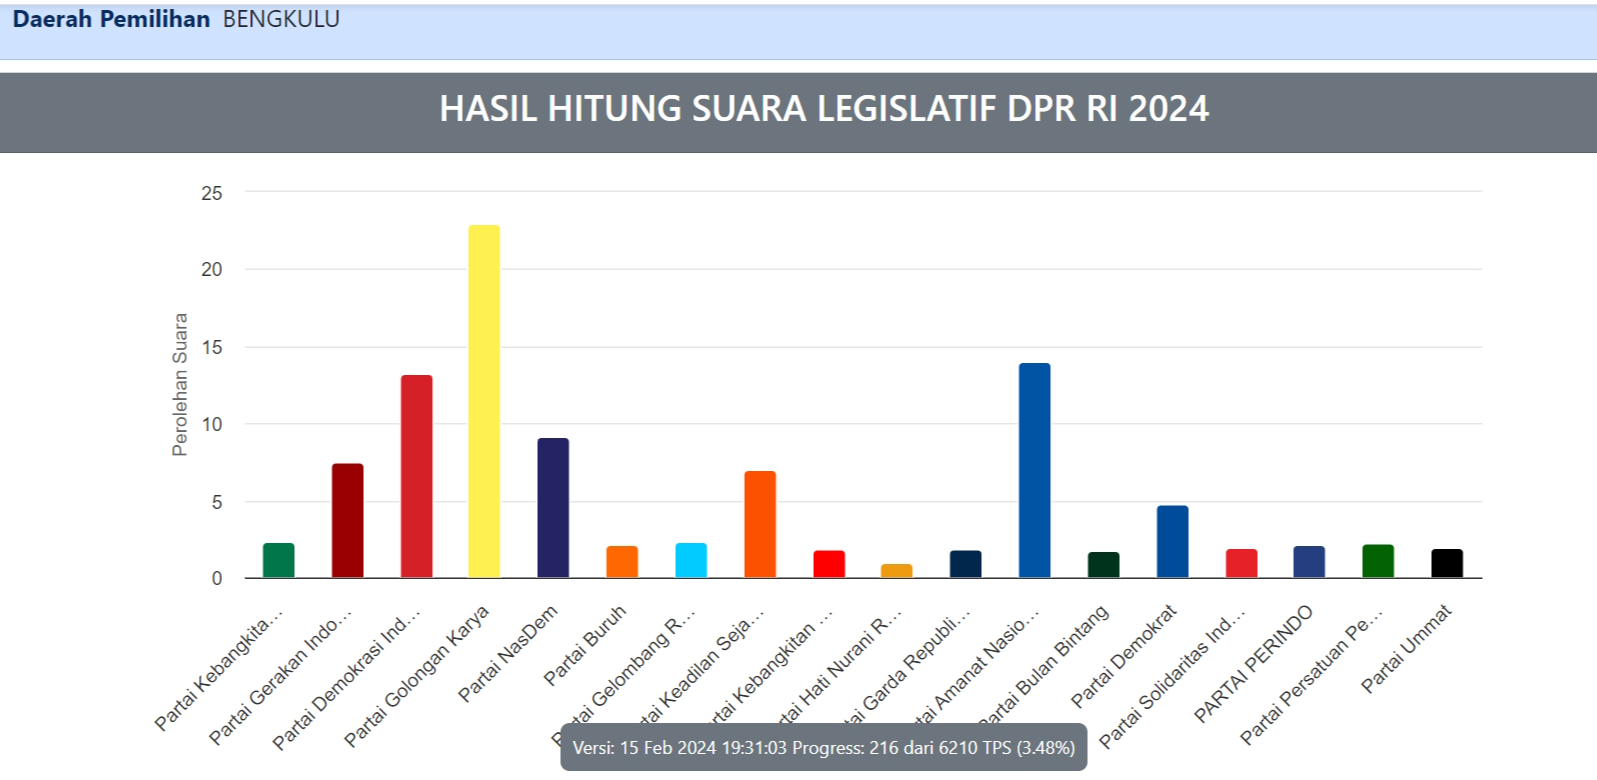 Pileg DPR RI Dapil Bengkulu, Golkar Masih Tertinggi; M Saleh, Derta, Dewi Coryati, dan Eko Kurnia Bersaing